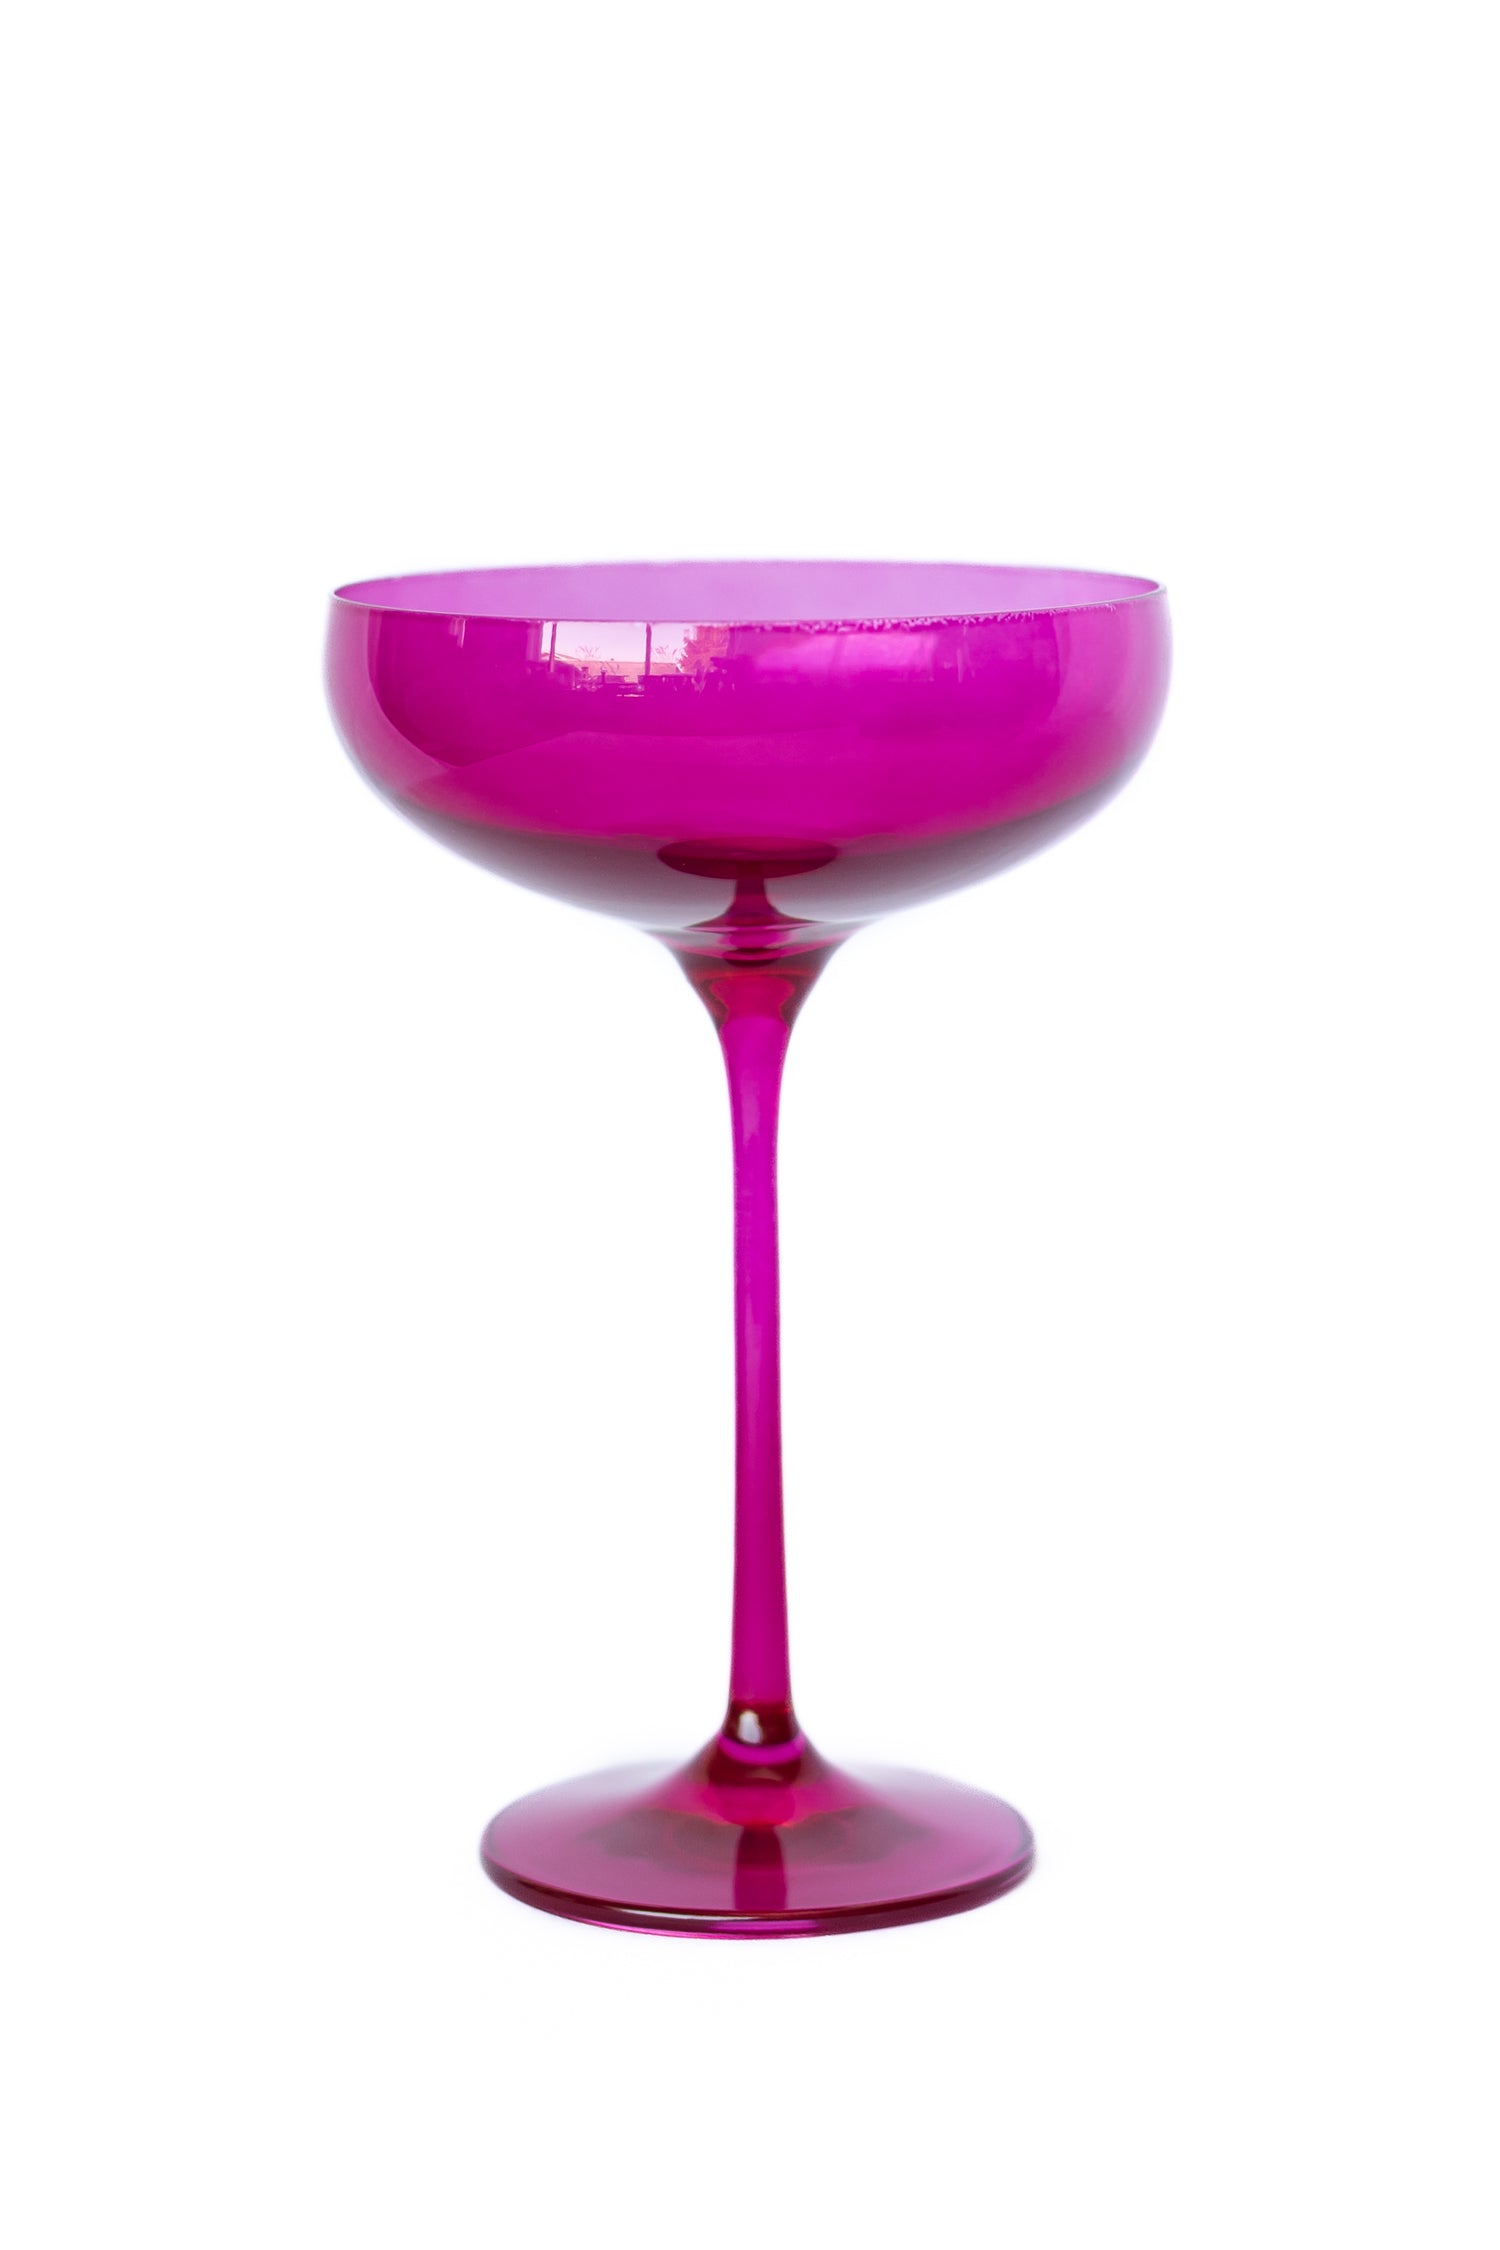 Estelle Colored Champagne Coupe Stemware - Set of 6 {Viva Magenta (Our Fuchsia)}